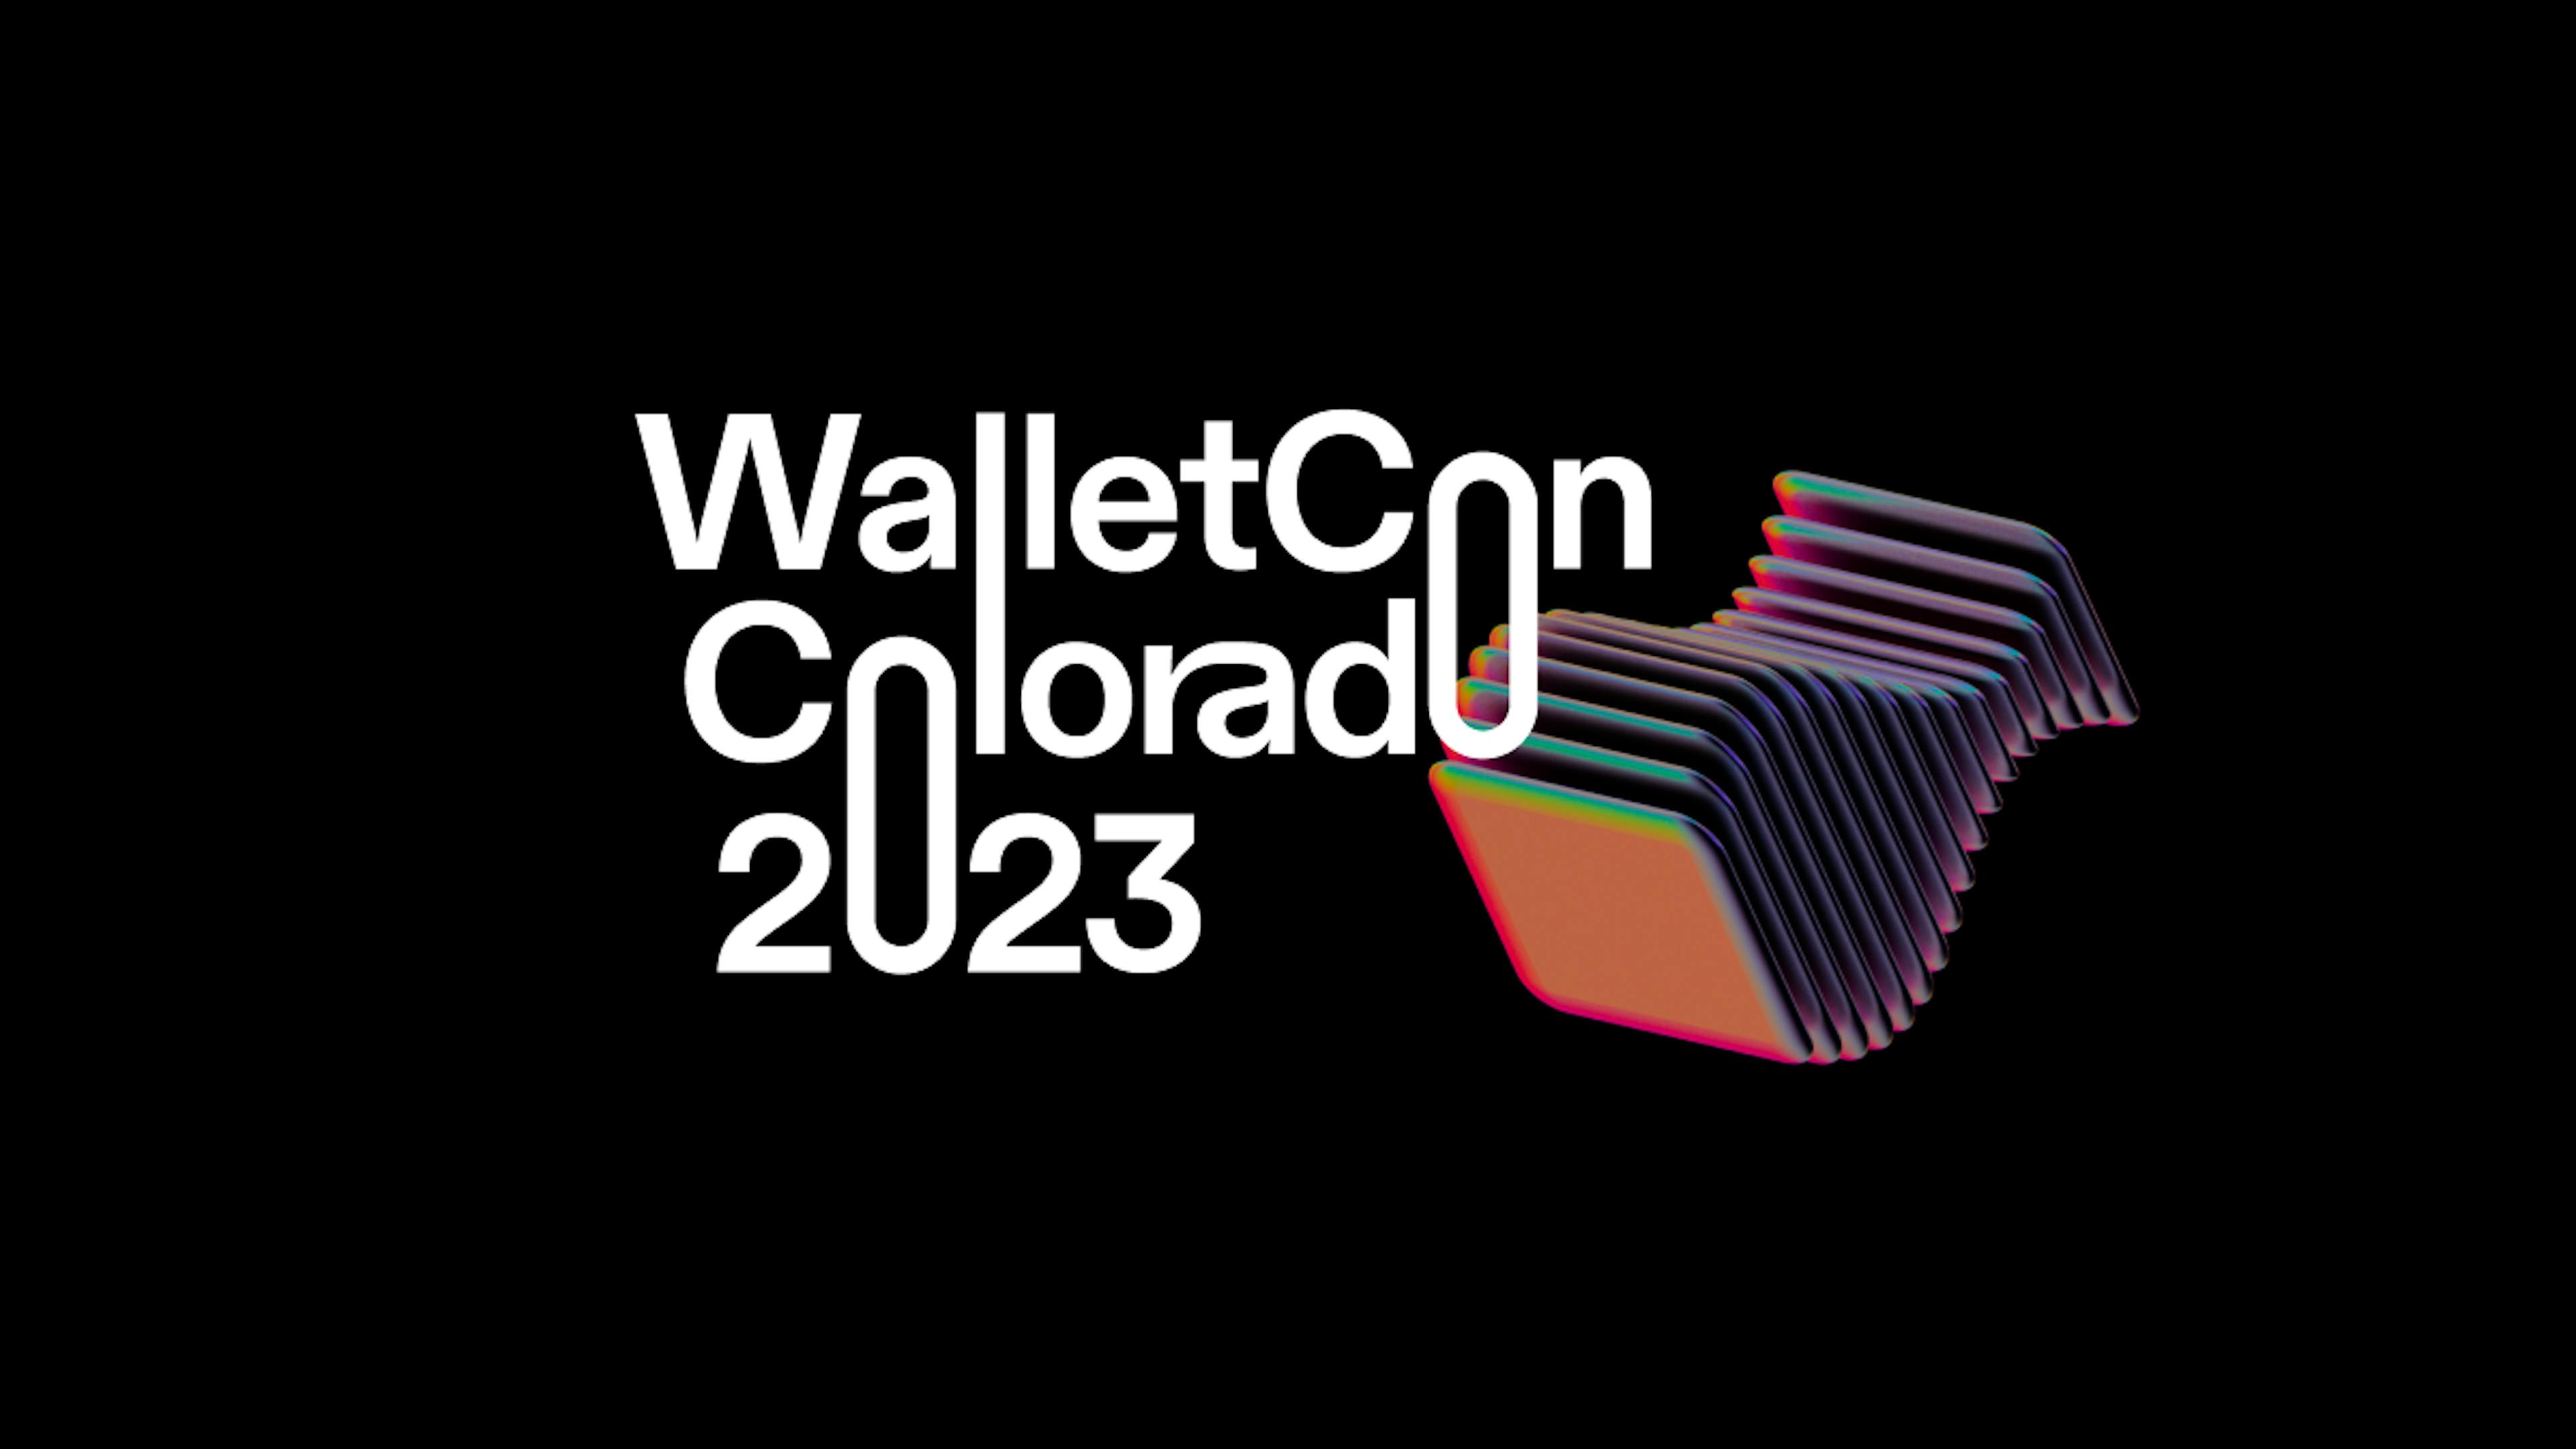 The logo for WalletCon 2023